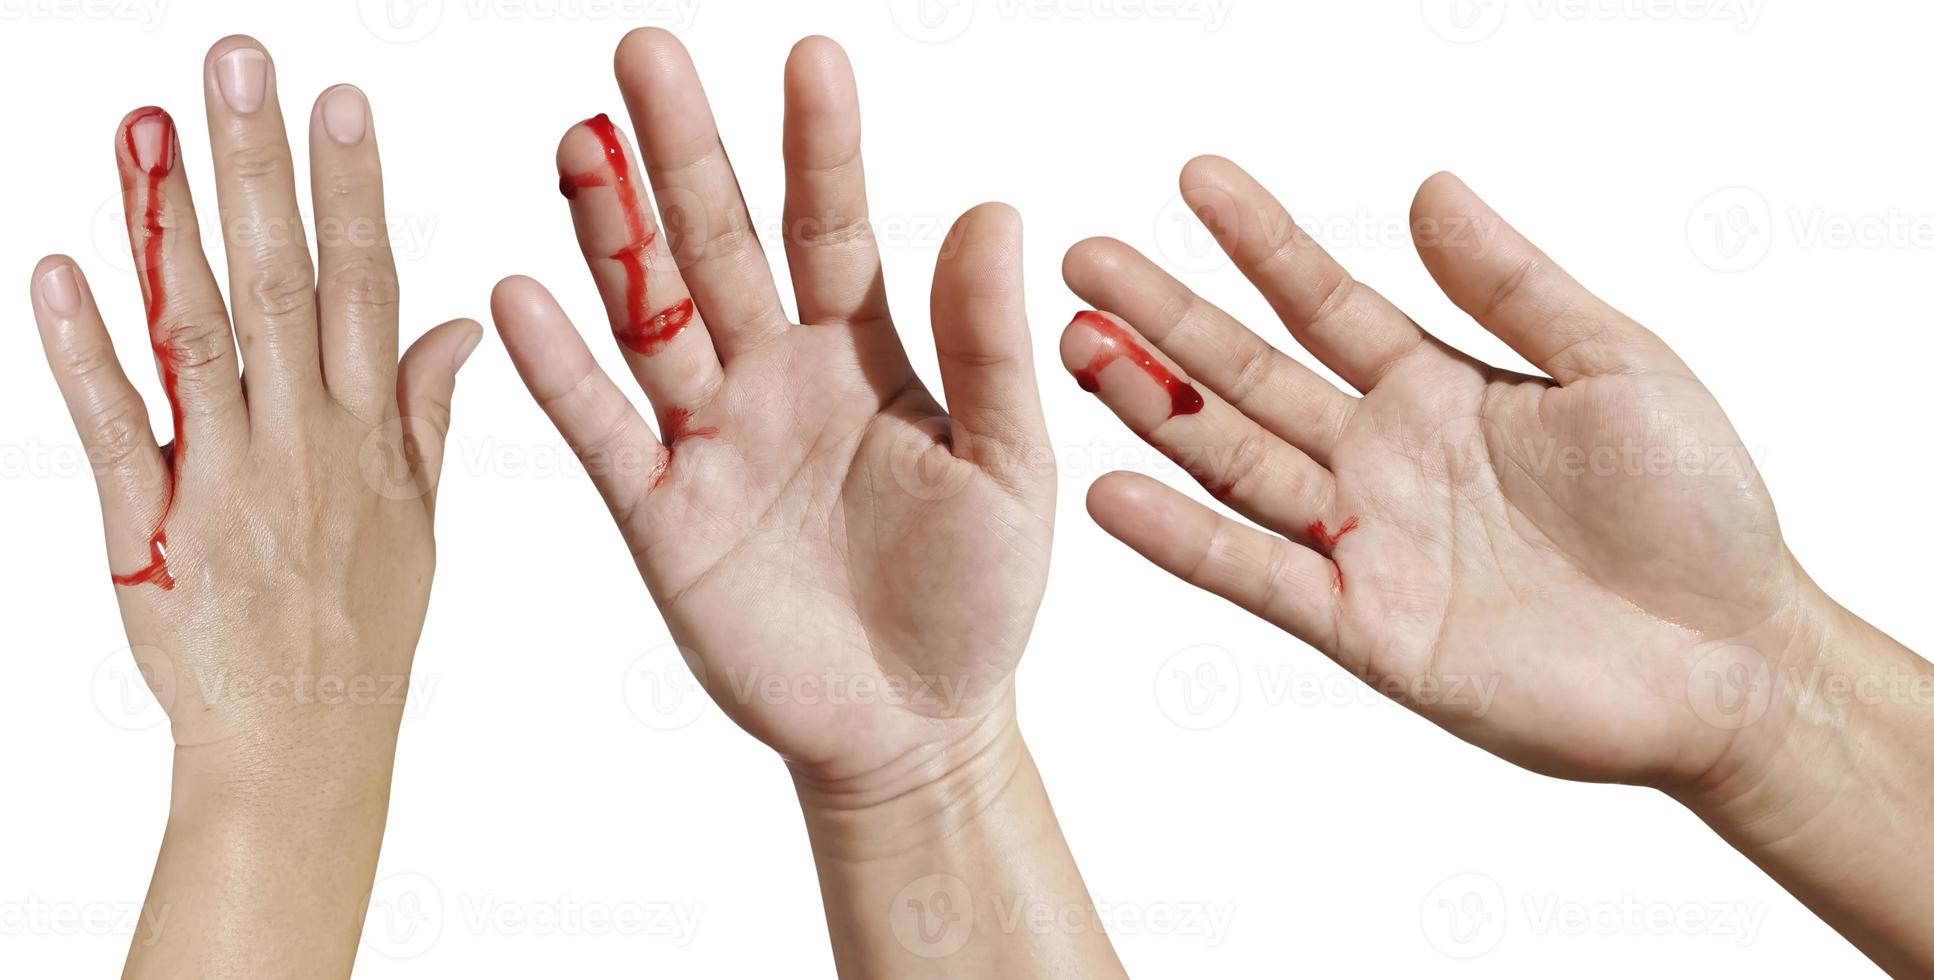 Die Hand der blutigen Frau stellt Verletzungen, Unfälle auf weißem Hintergrund dar foto